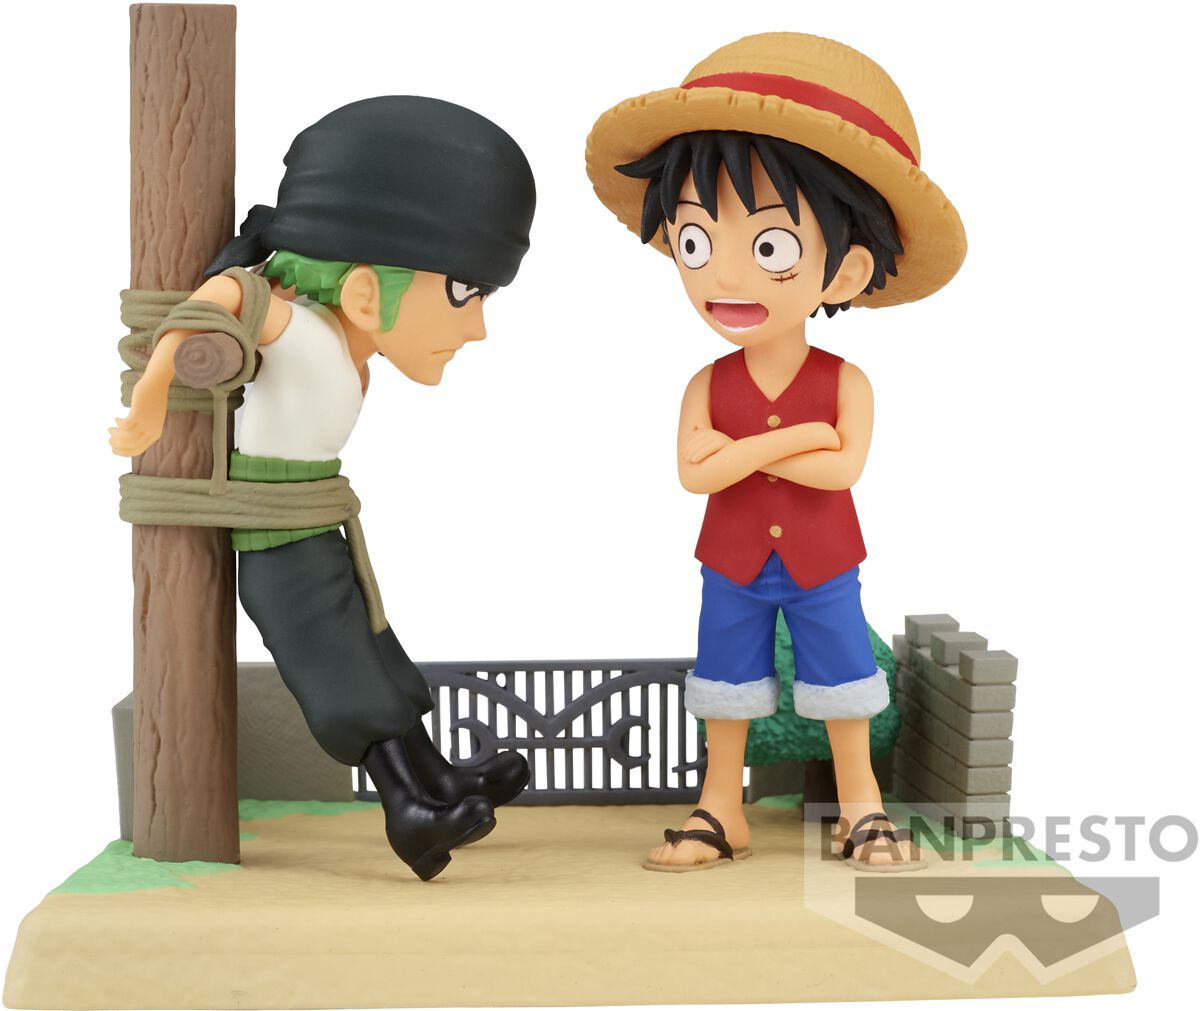 One Piece - Anime Sammelfiguren - Banpresto - Monkey D. Luffy & Roronoa Zoro (WCF - Log Stories Series) - multicolor  - Lizenzierter Fanartikel von One Piece